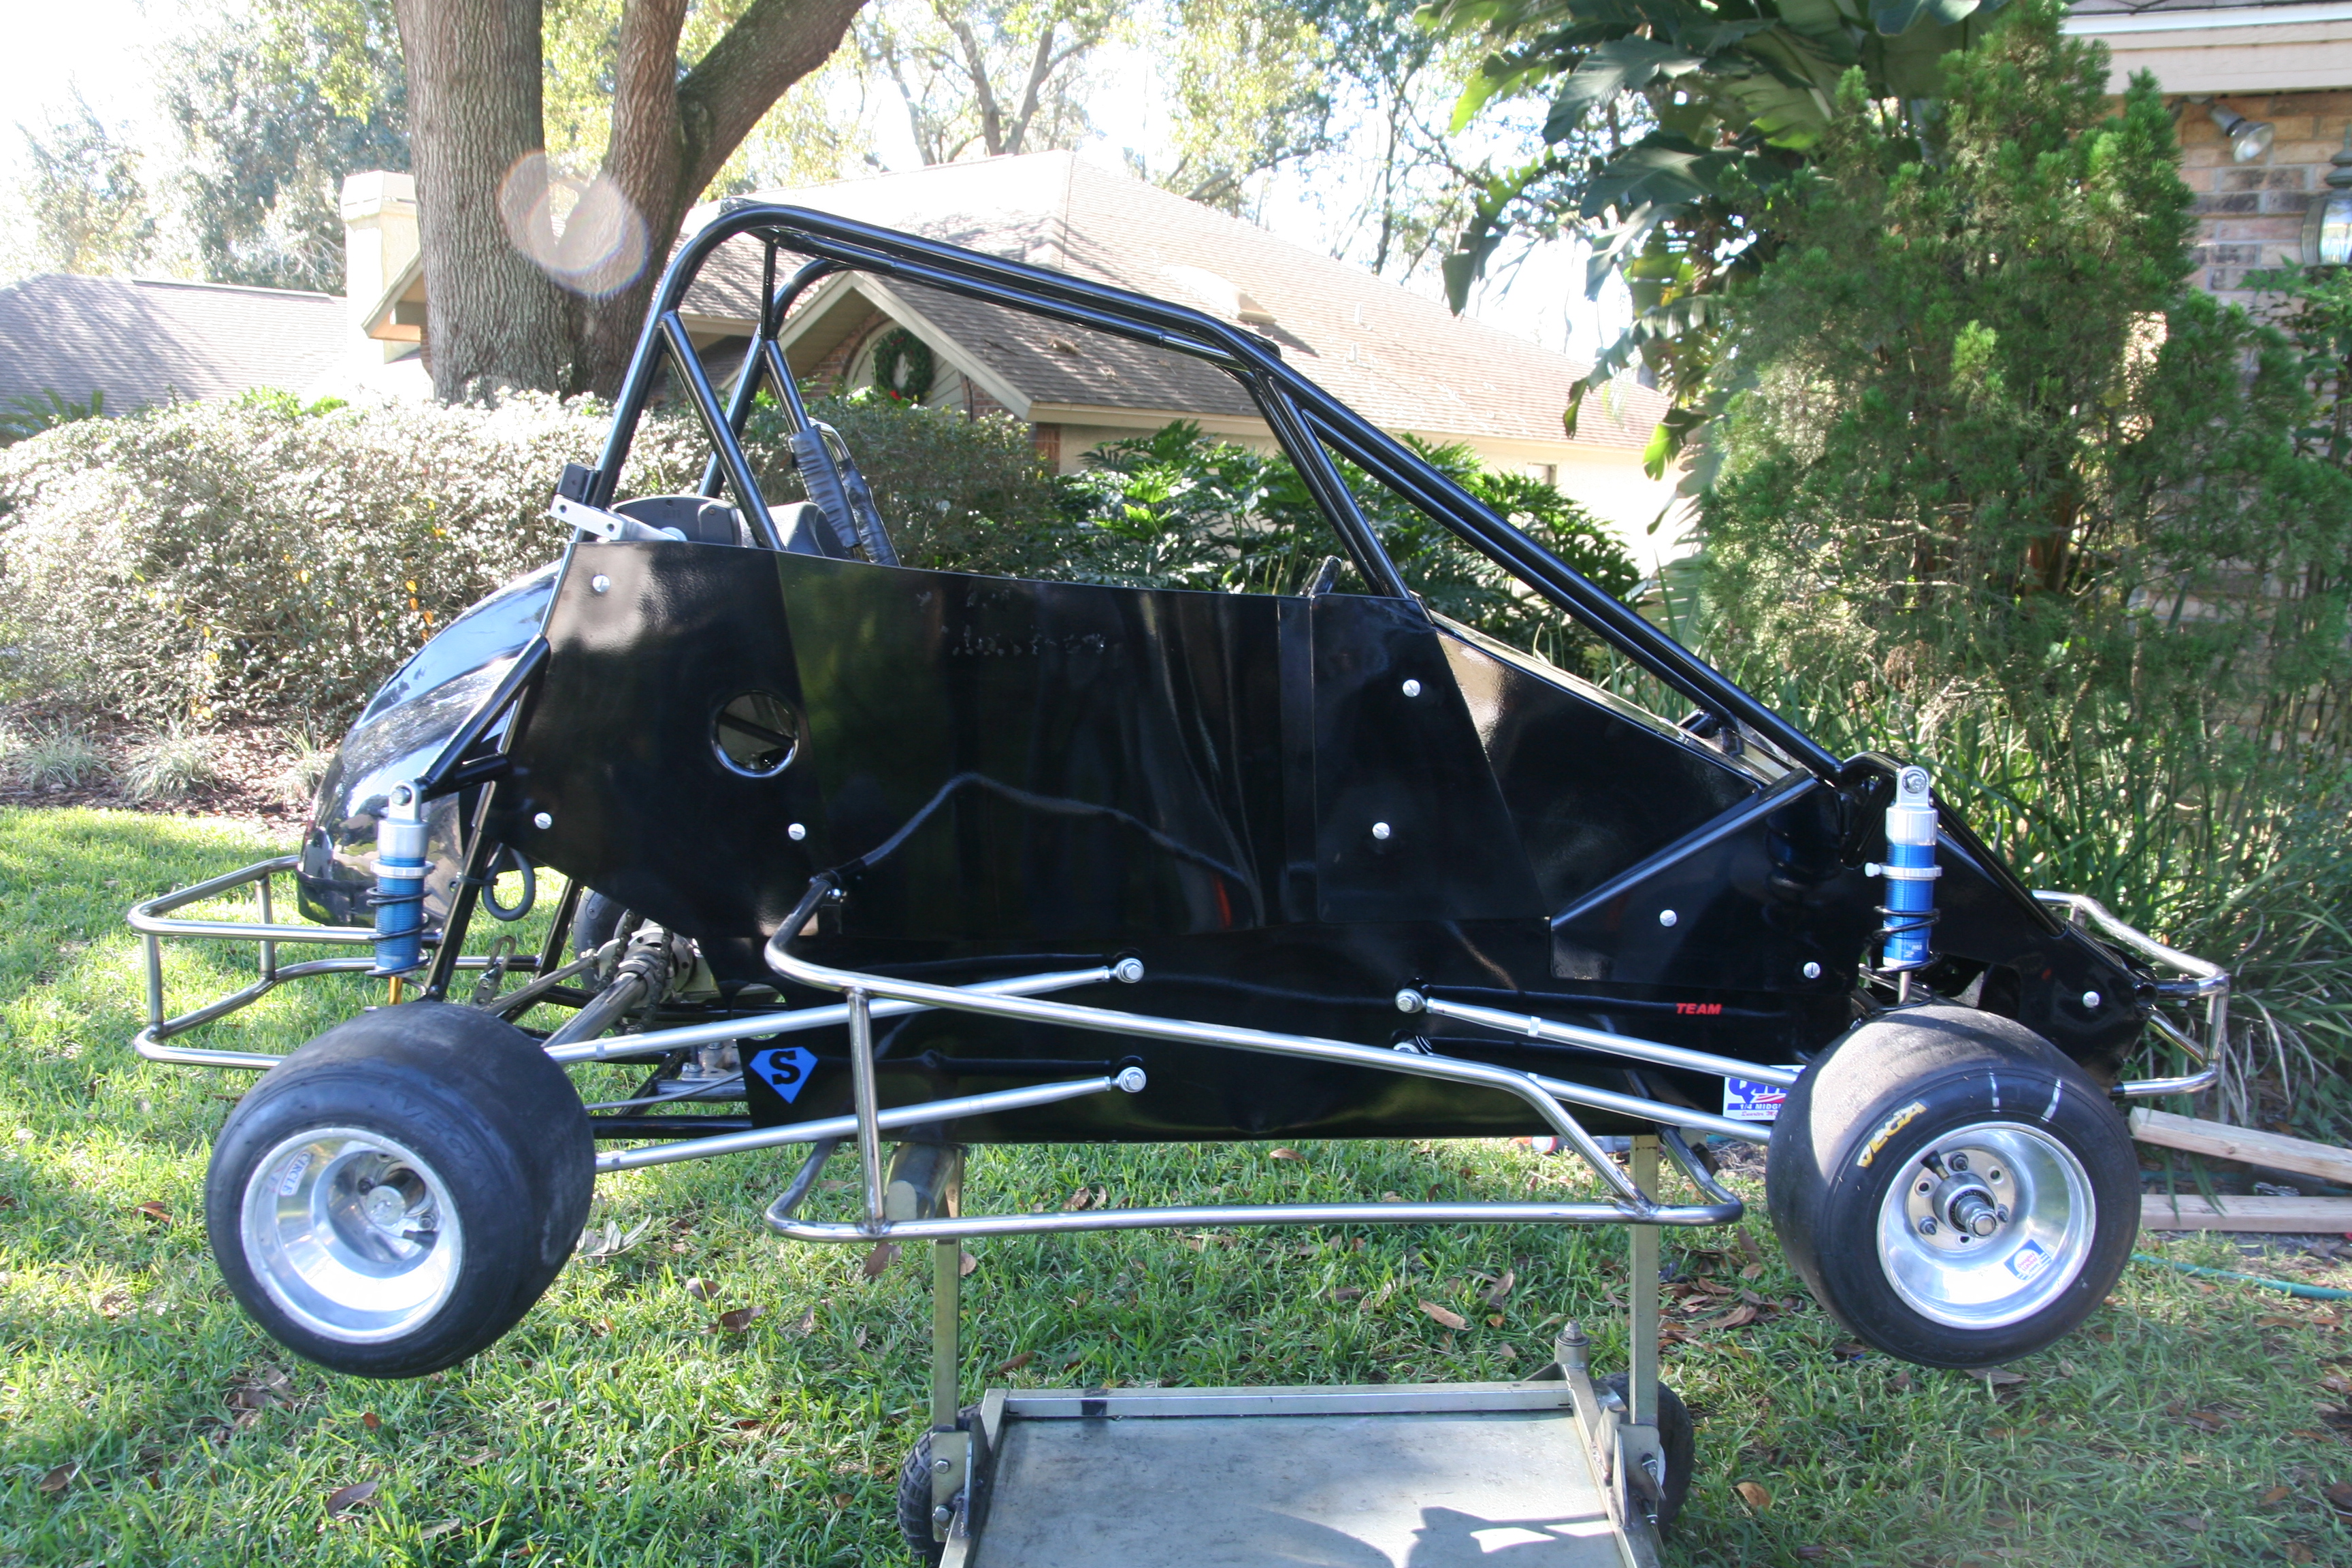 Quarter midget chassis indianapolis